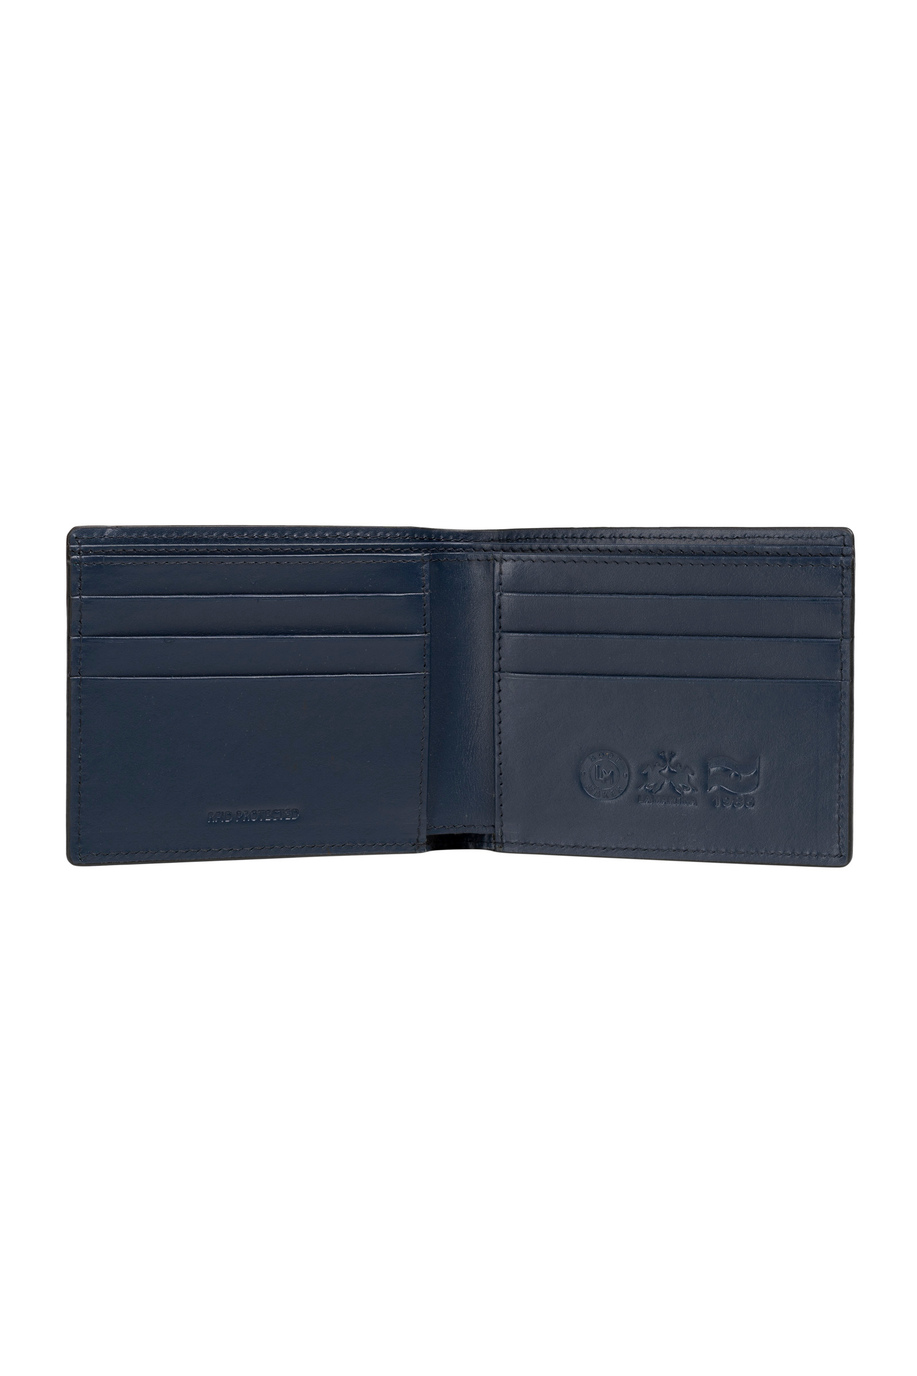 Men's leather wallet - Pablo - Accessories | La Martina - Official Online Shop